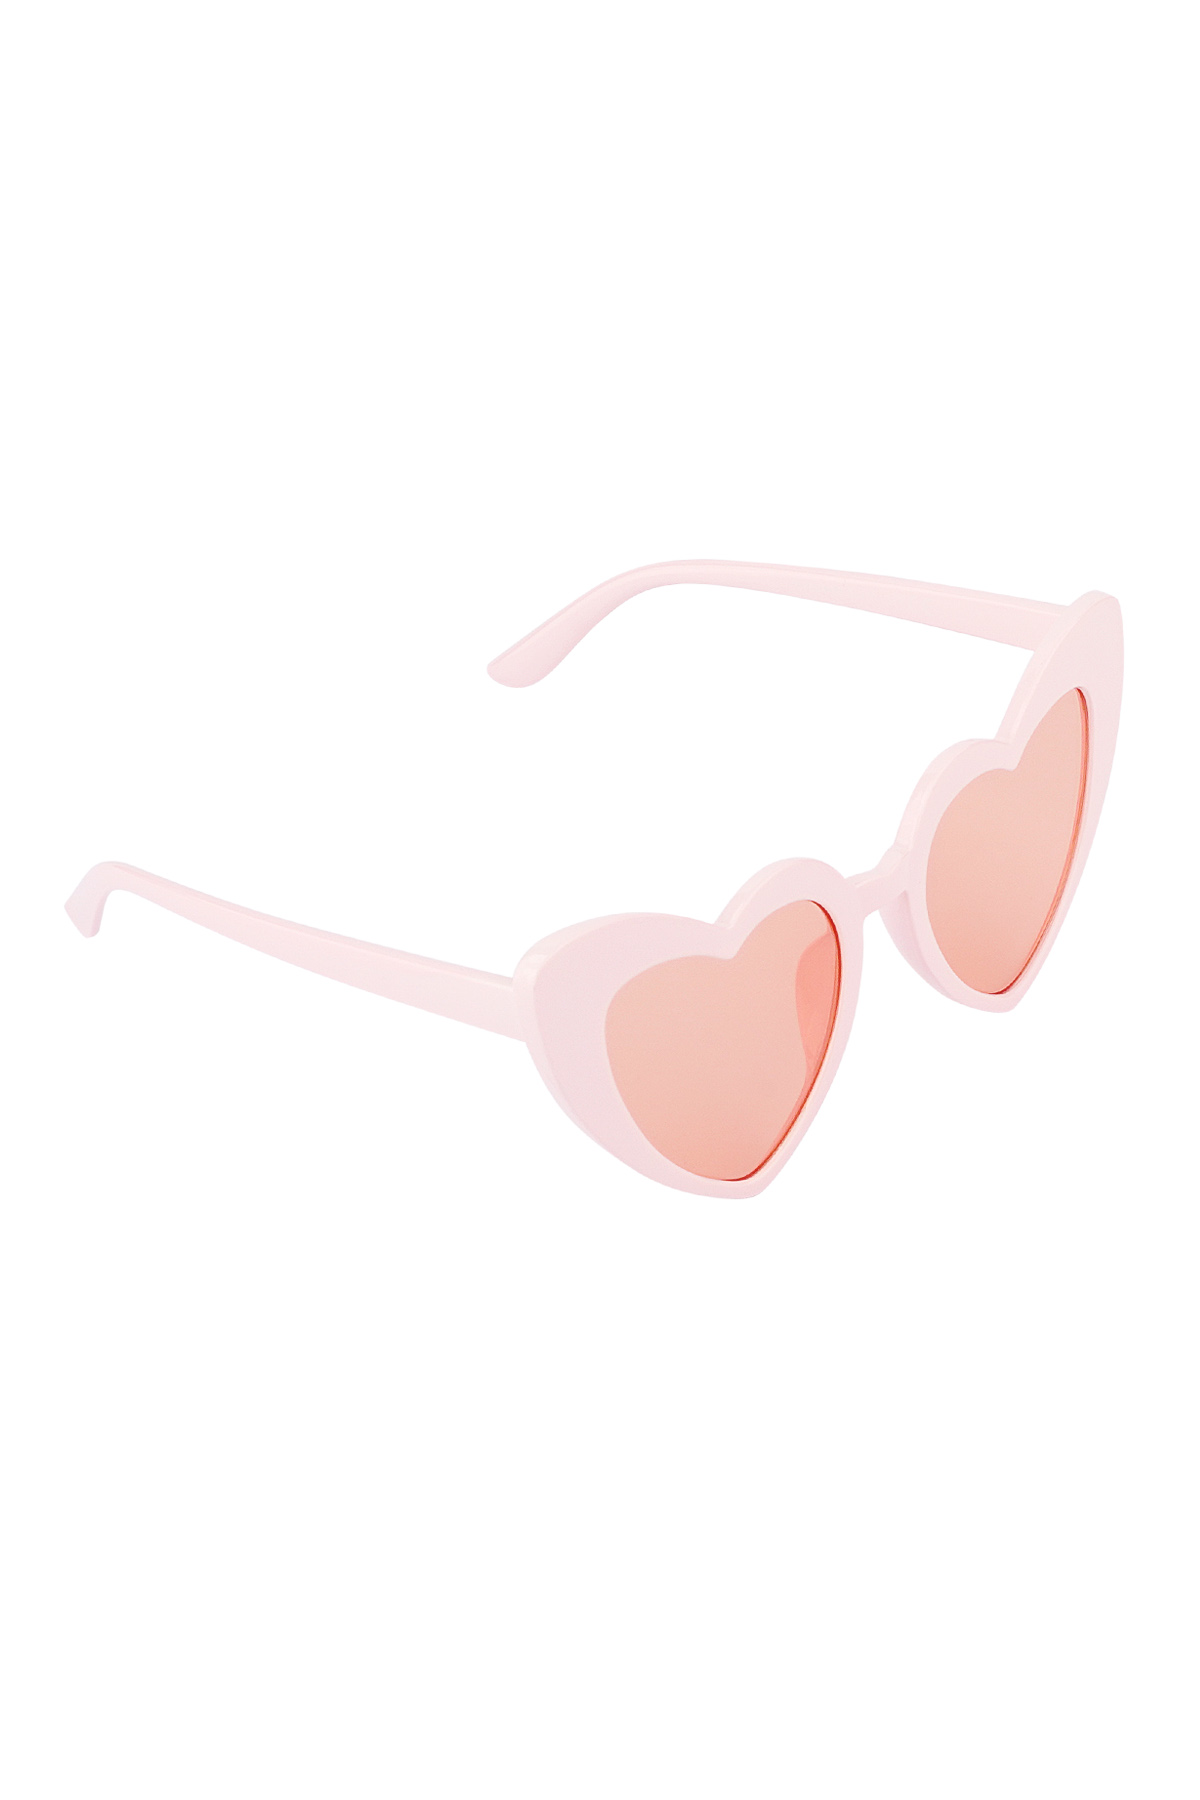 L'amore per gli occhiali da sole è nell'aria: rosa